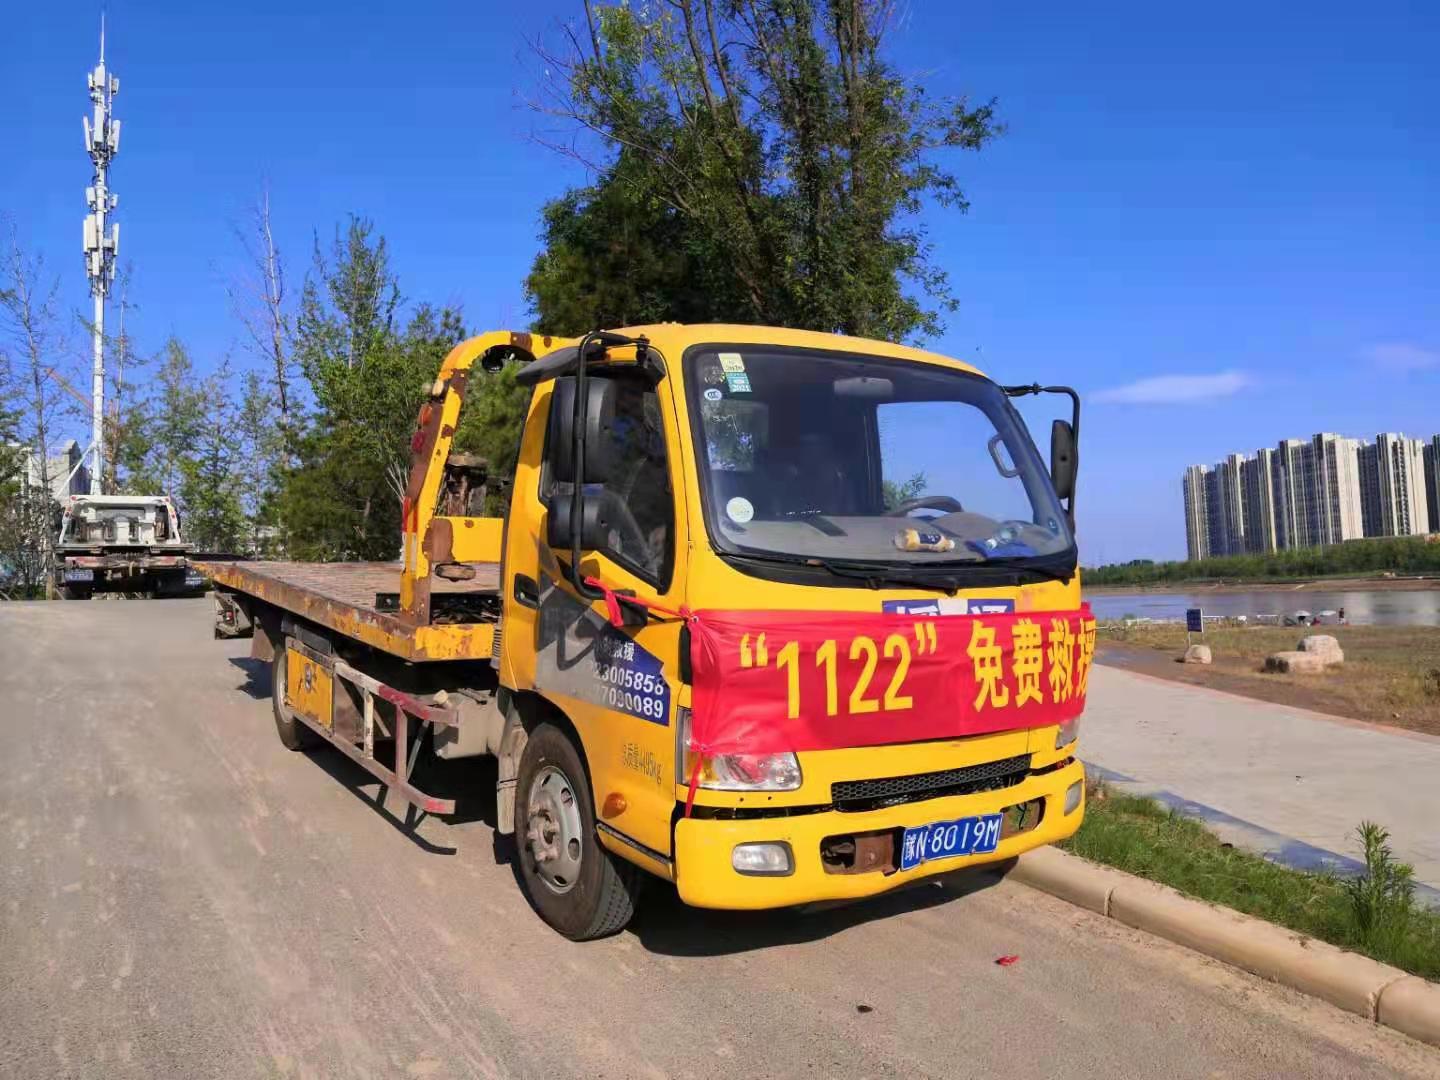 上海24小时困境拖车-1122诚信救援